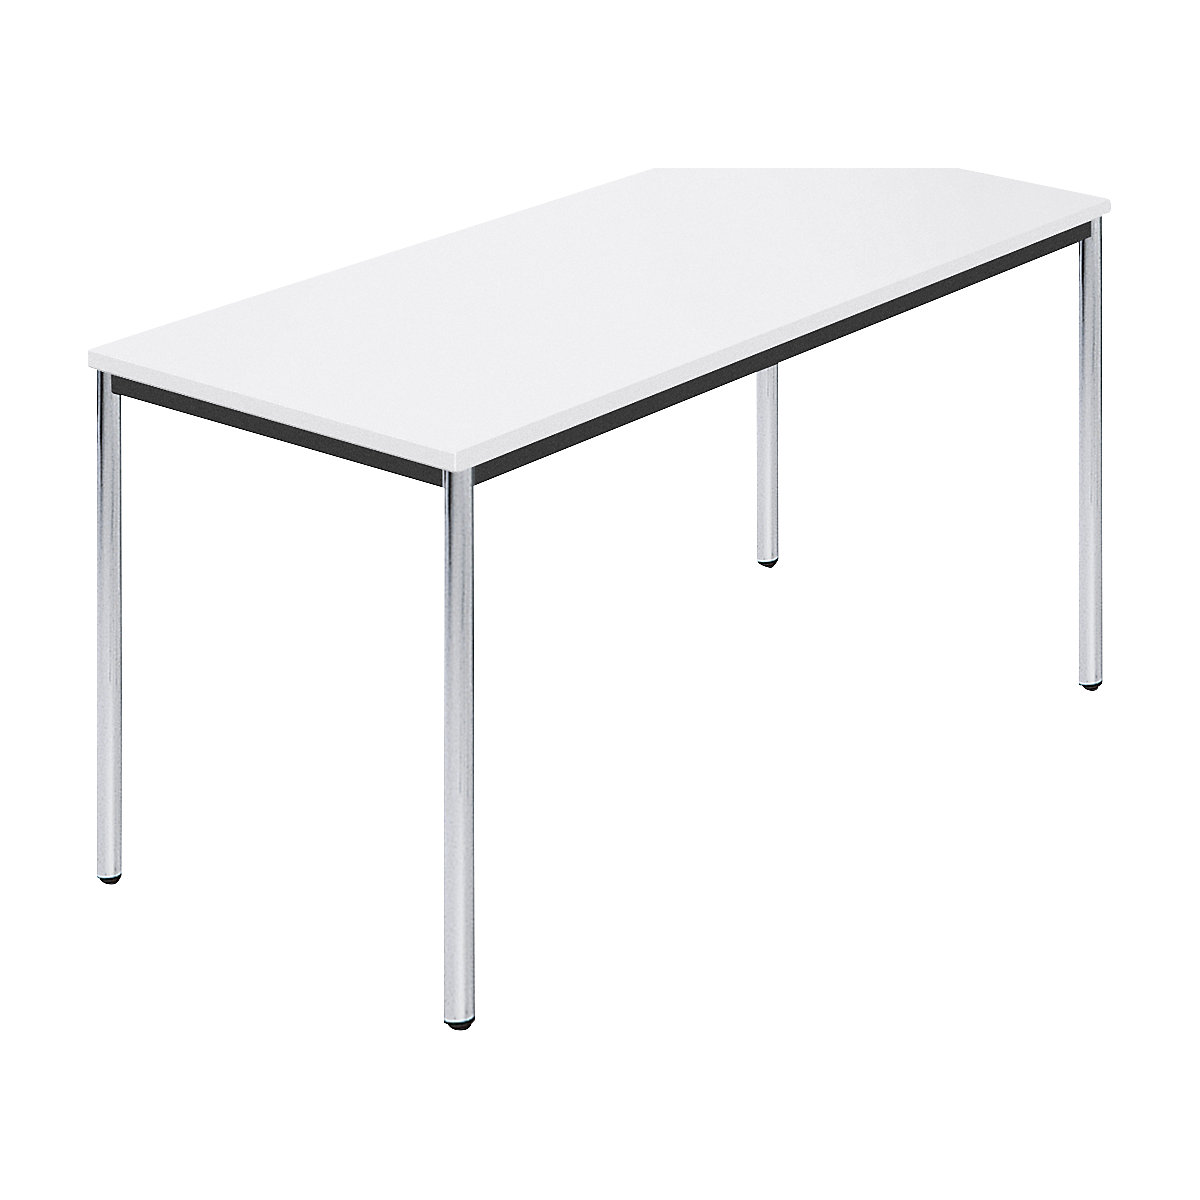 Table rectangulaire en tube rond chromé, l x p 1400 x 700 mm, blanc-5